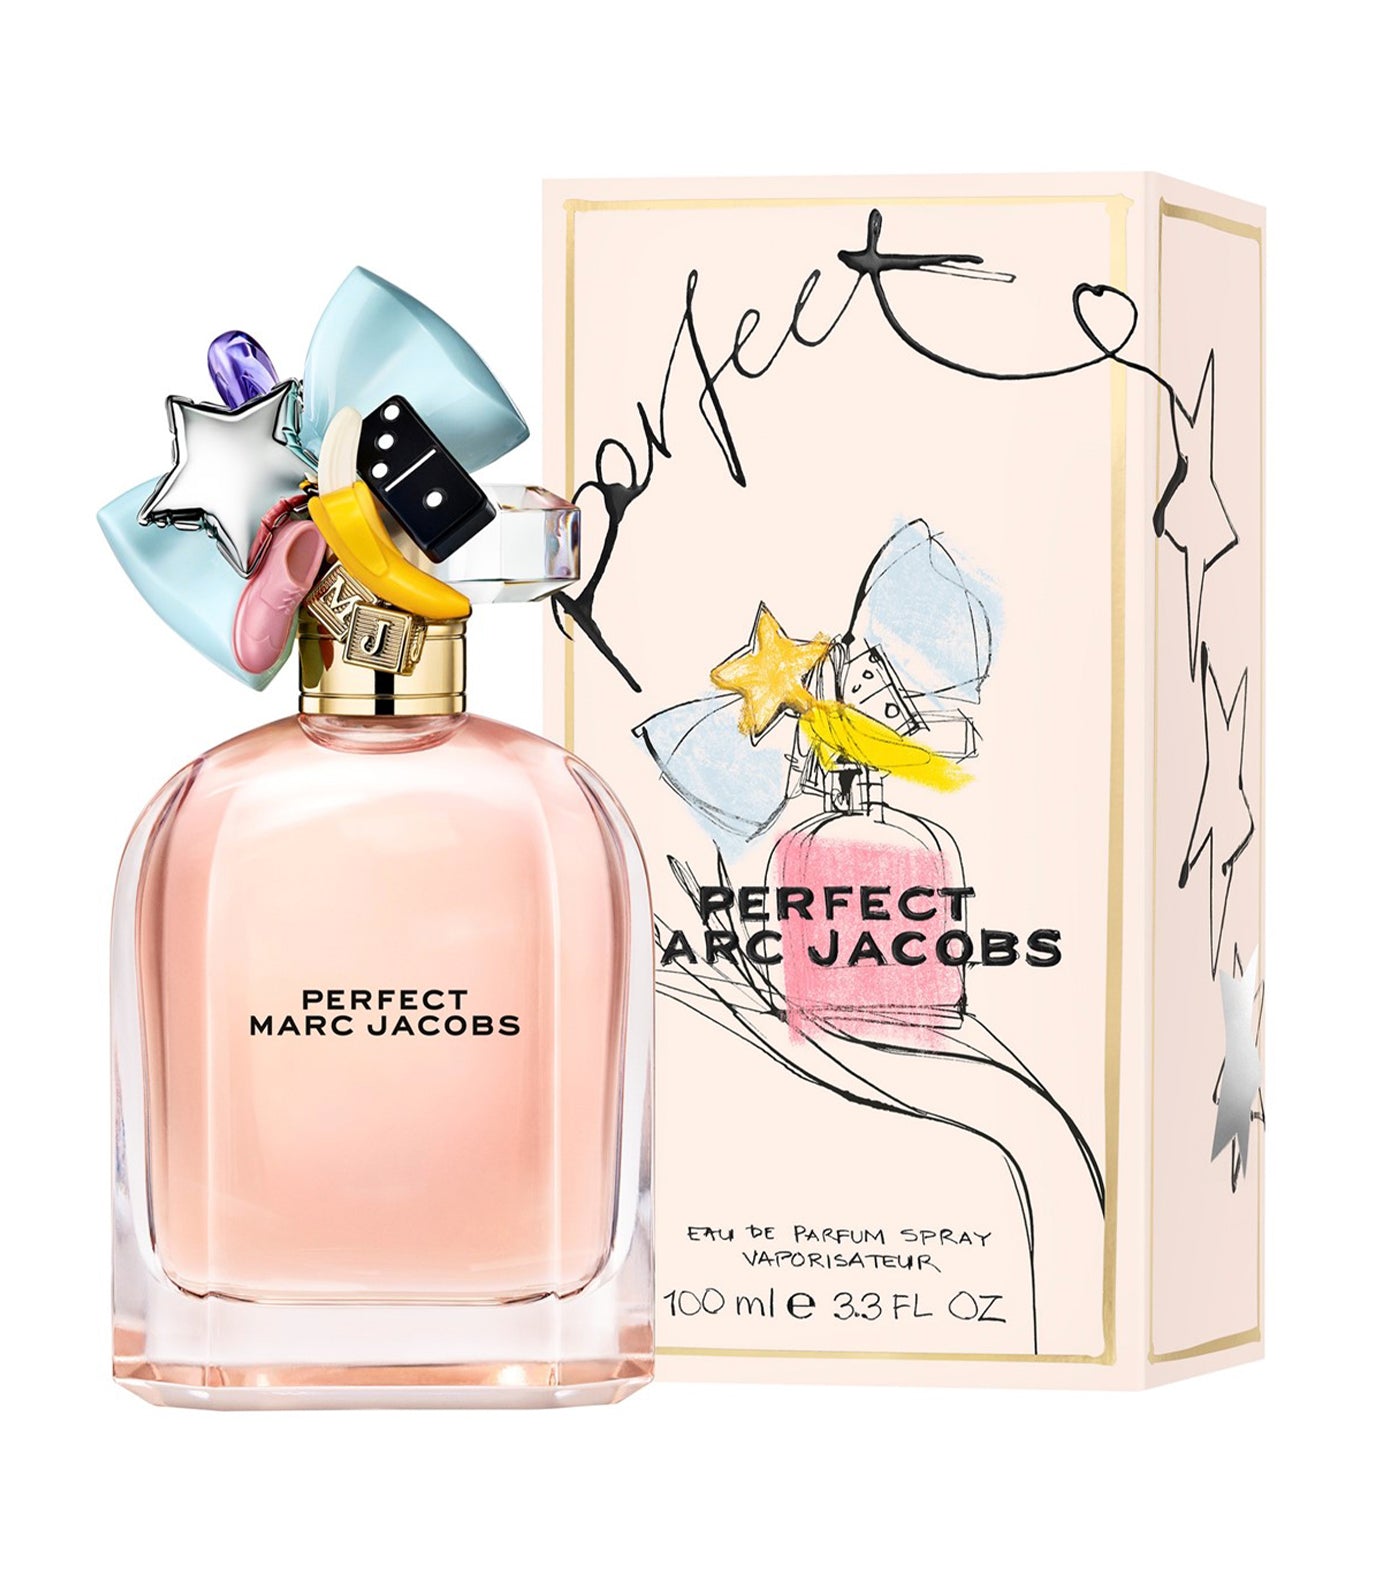 Perfect Marc Jacobs Eau de Parfum by Marc Jacobs Fragrances